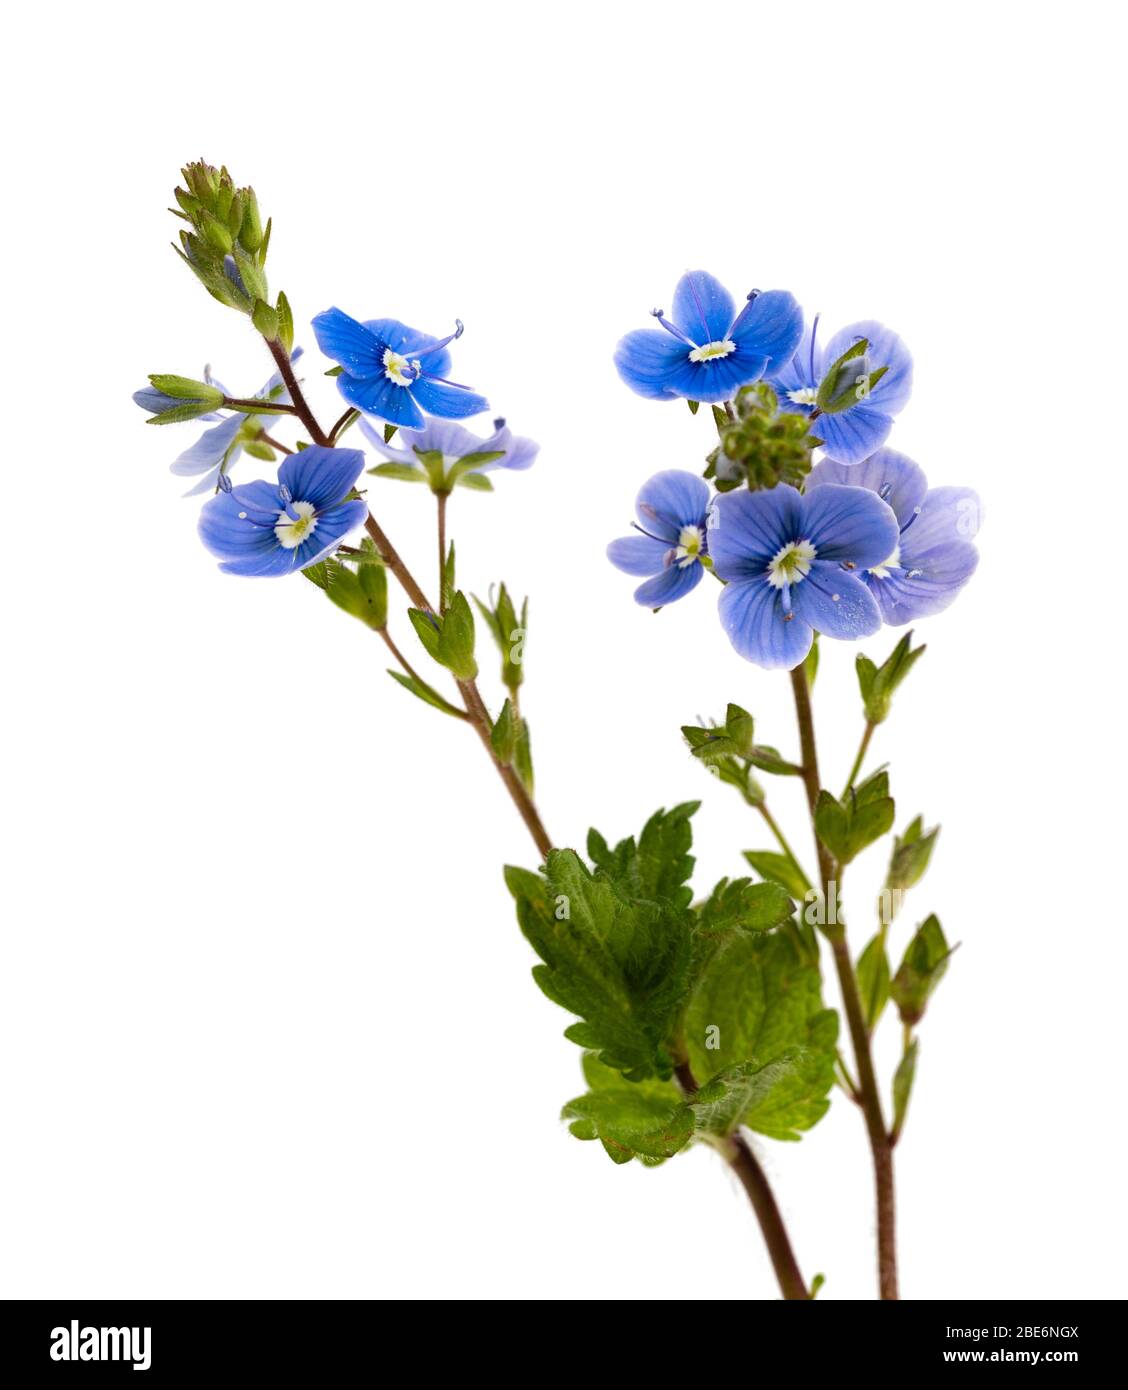 Tige et petites fleurs bleues de la fleur sauvage britannique, germander speedwell, Veronica chamaedrys, sur fond blanc Banque D'Images